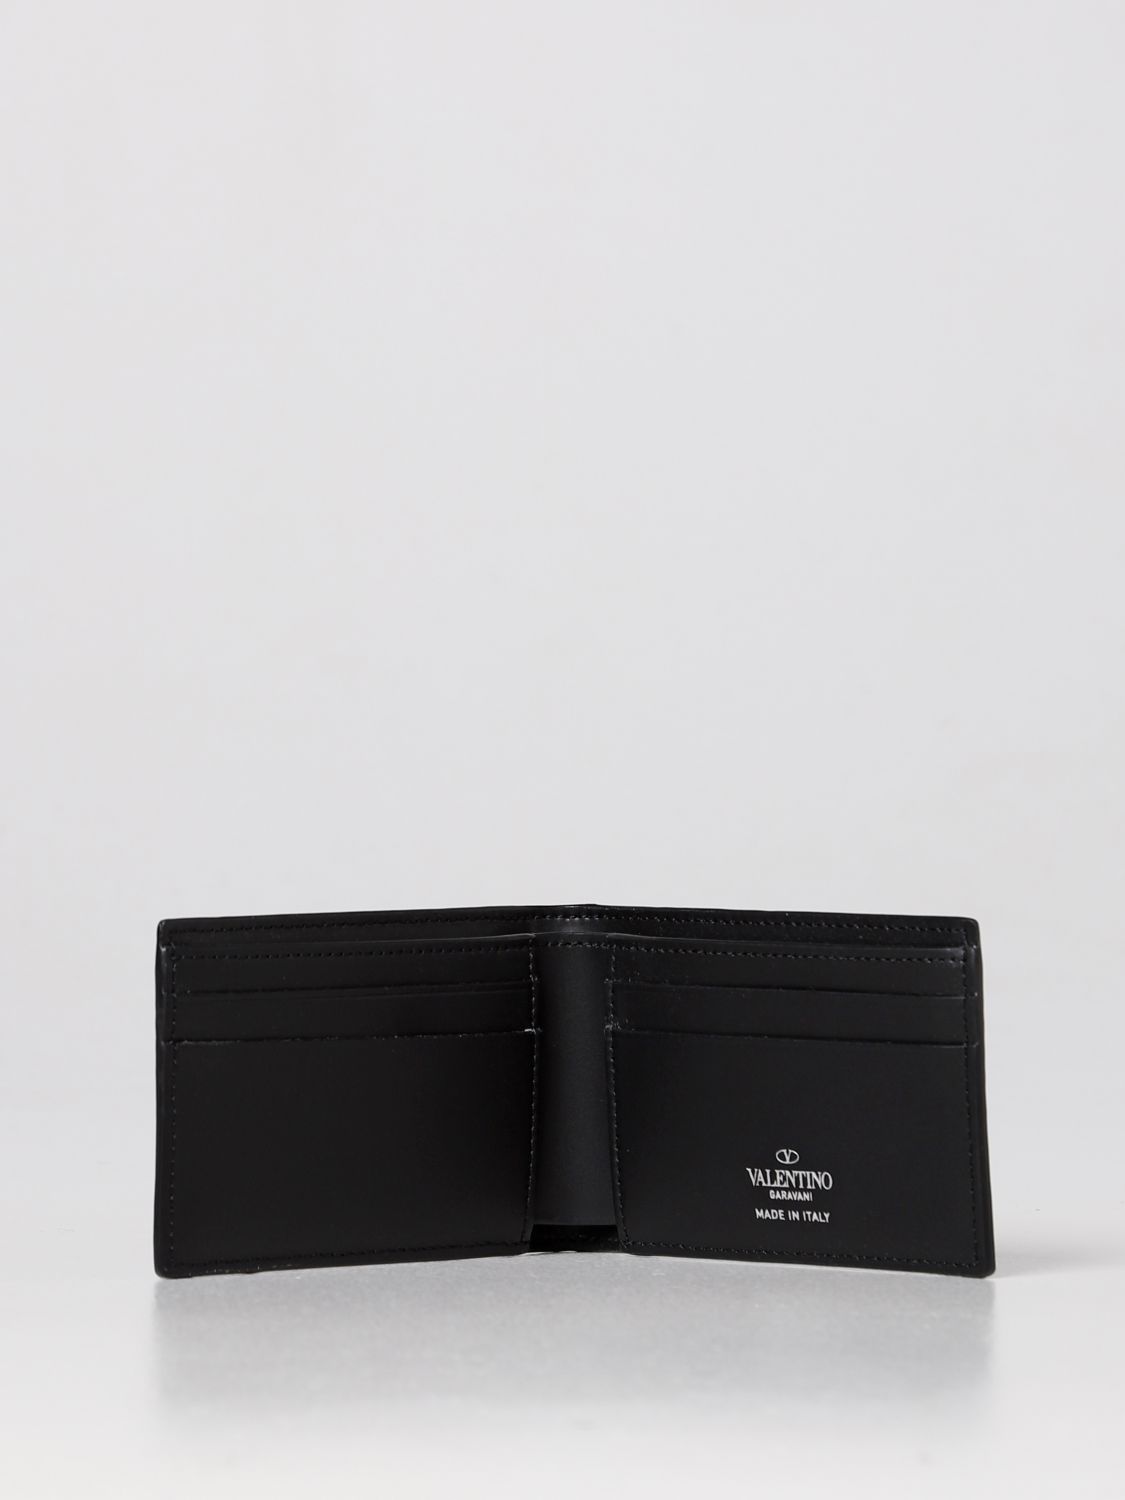 Wallet Valentino Garavani: Valentino Garavani VLTN leather wallet black 2